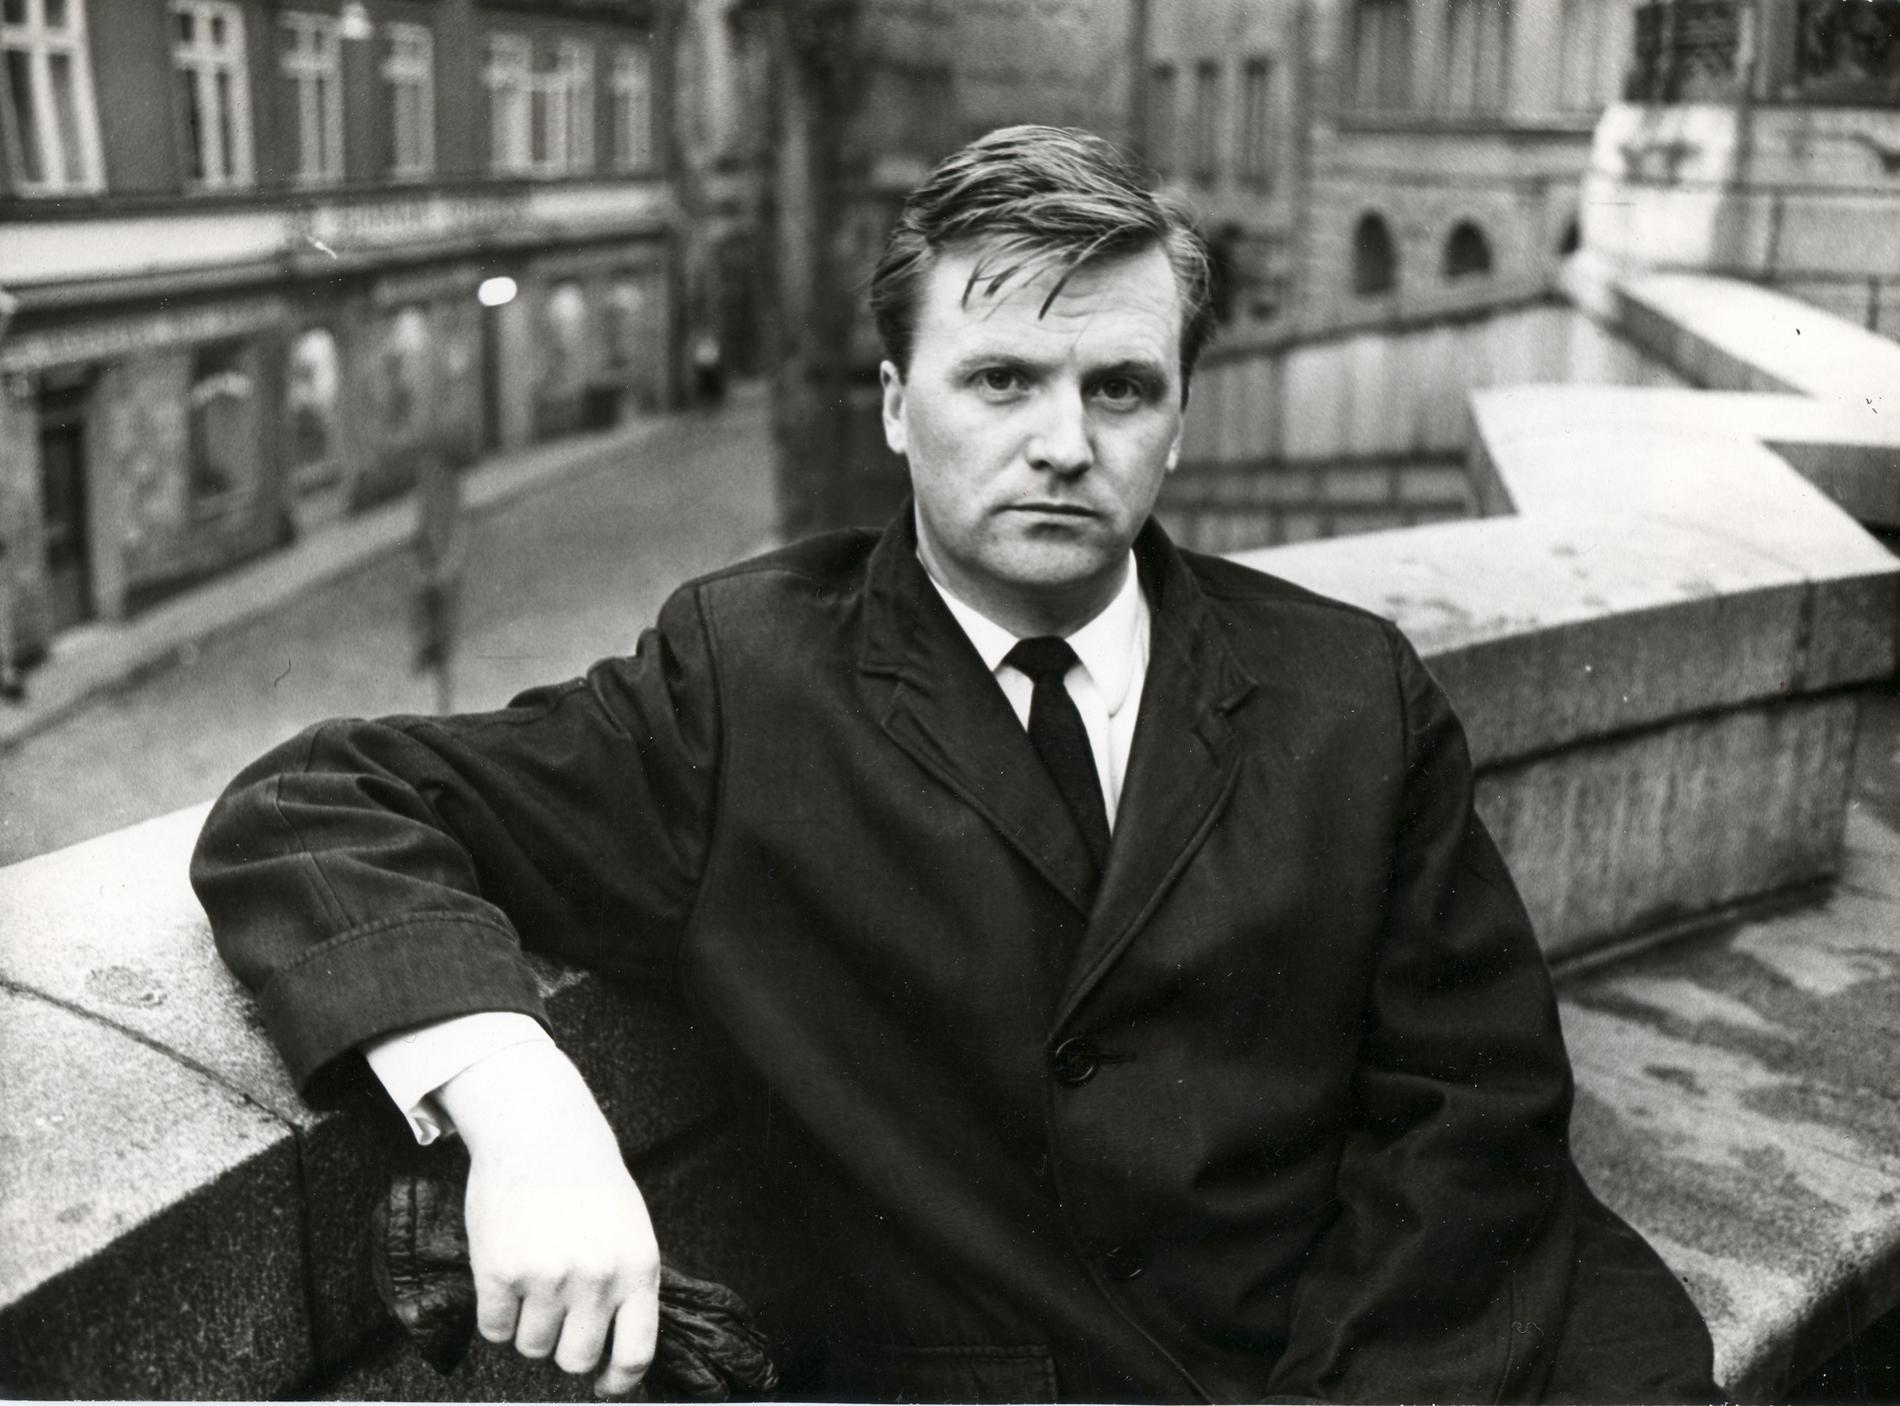 Obekväm skribent Kurt Salomonson debuterade på 50-talet. Foto: Lars Åby